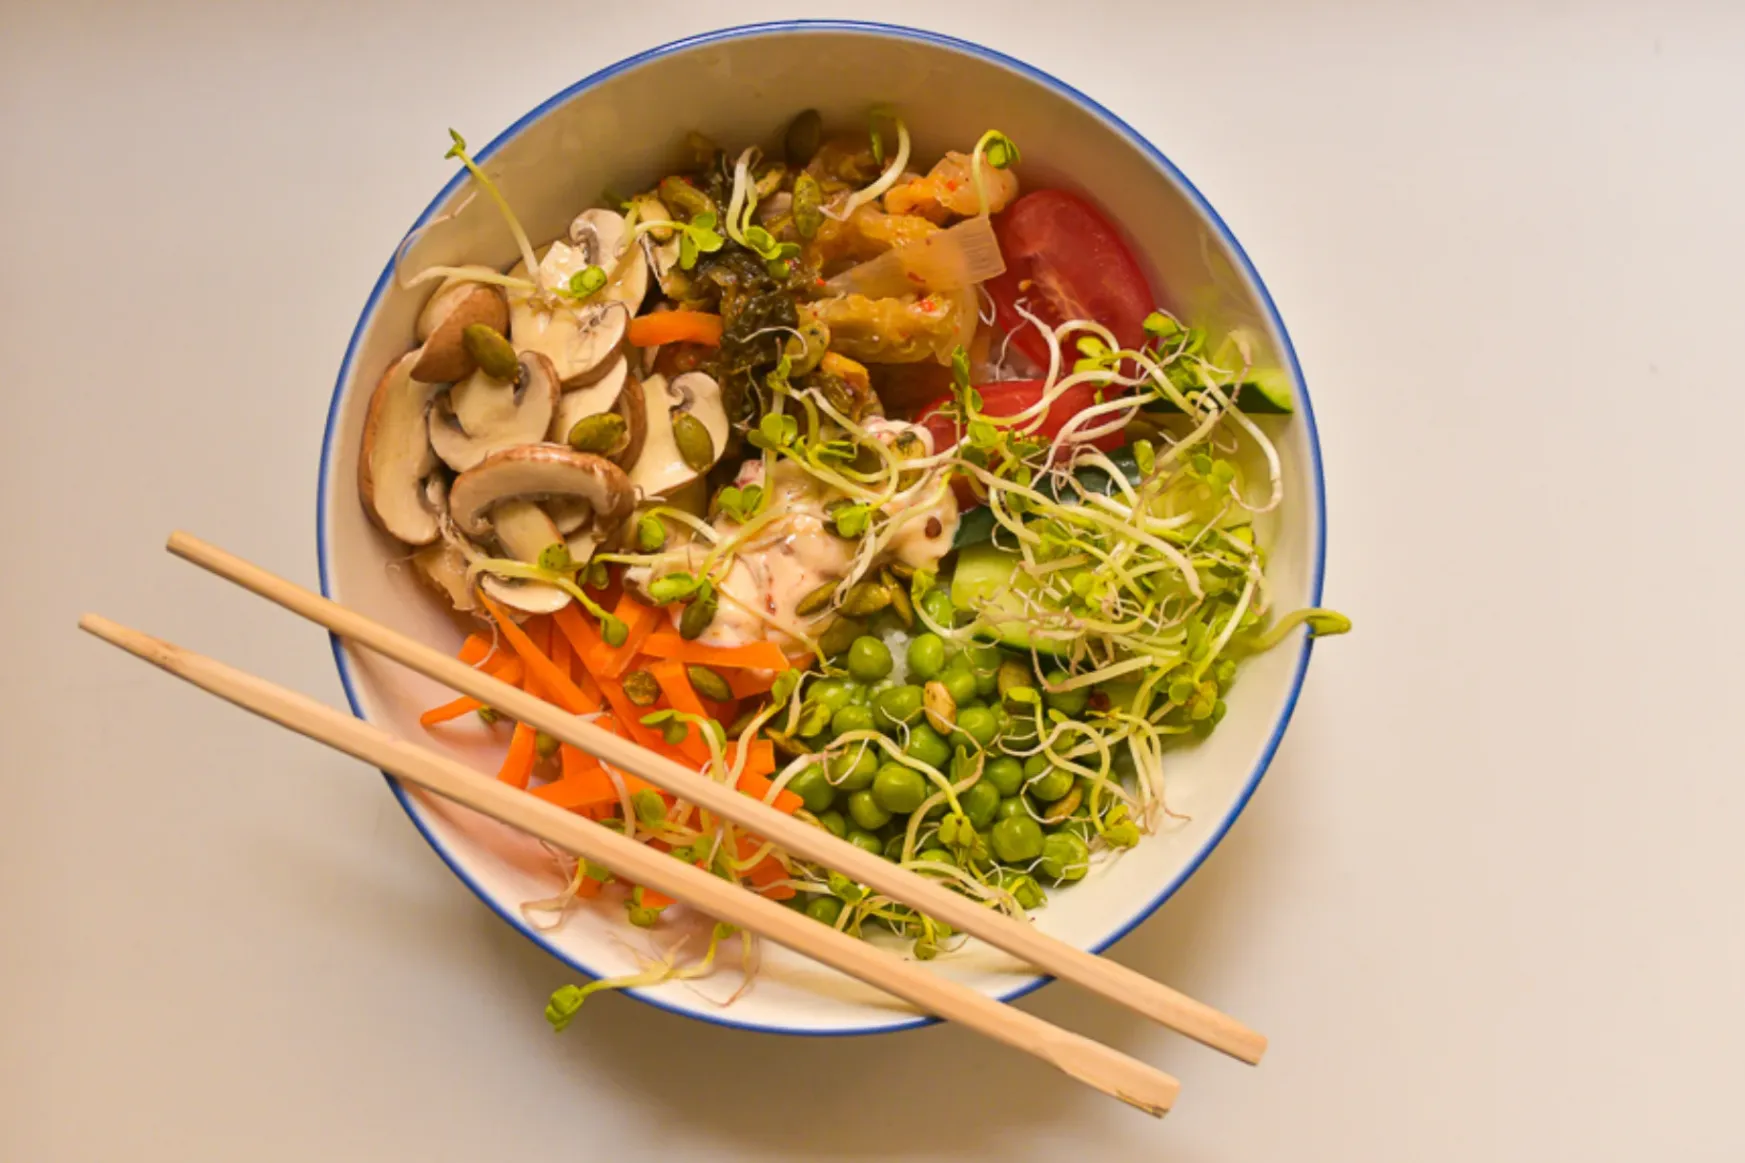 Poké bowl: miért esznek emberek hideg rizsmaradékokat nyers hallal, aranyáron?